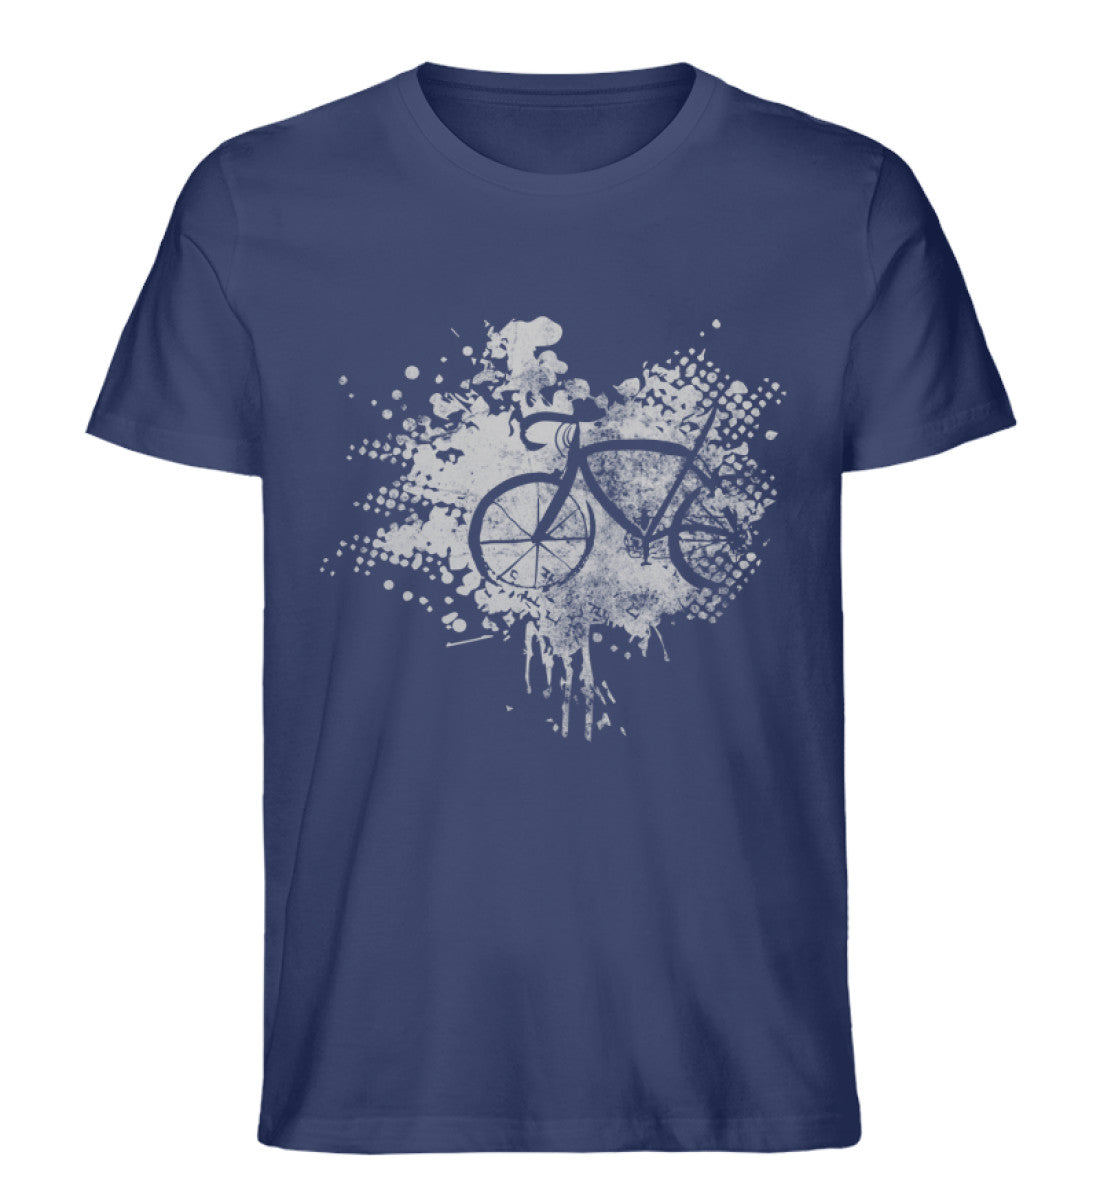 Fahrrad - Abstrakt - Herren Organic T-Shirt fahrrad Navyblau